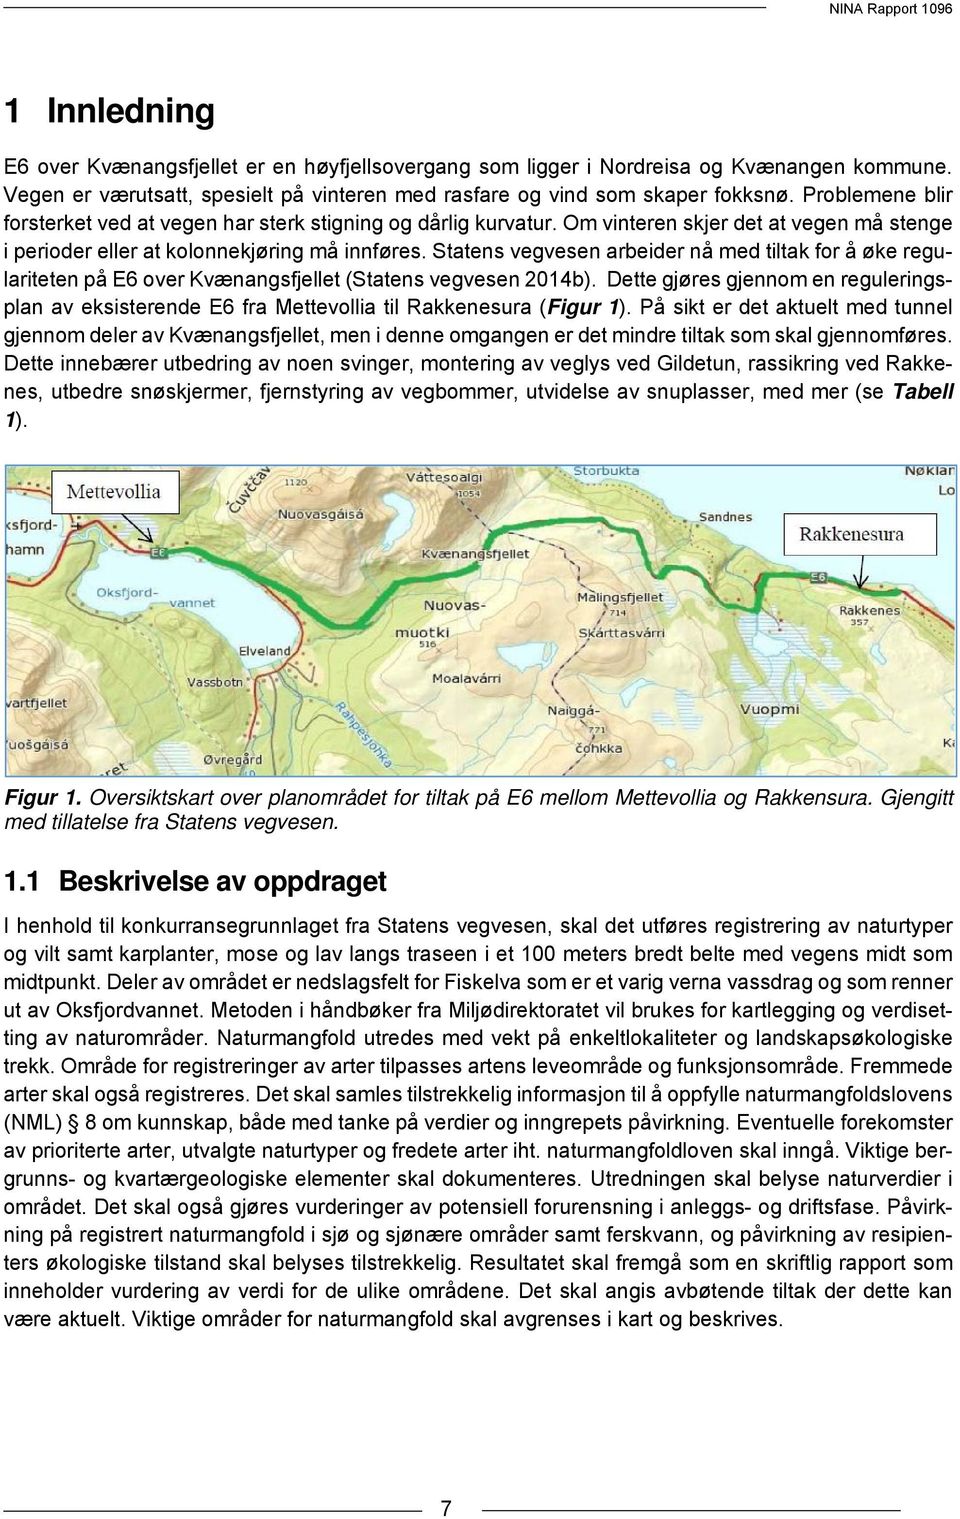 Statens vegvesen arbeider nå med tiltak for å øke regulariteten på E6 over Kvænangsfjellet (Statens vegvesen 2014b).